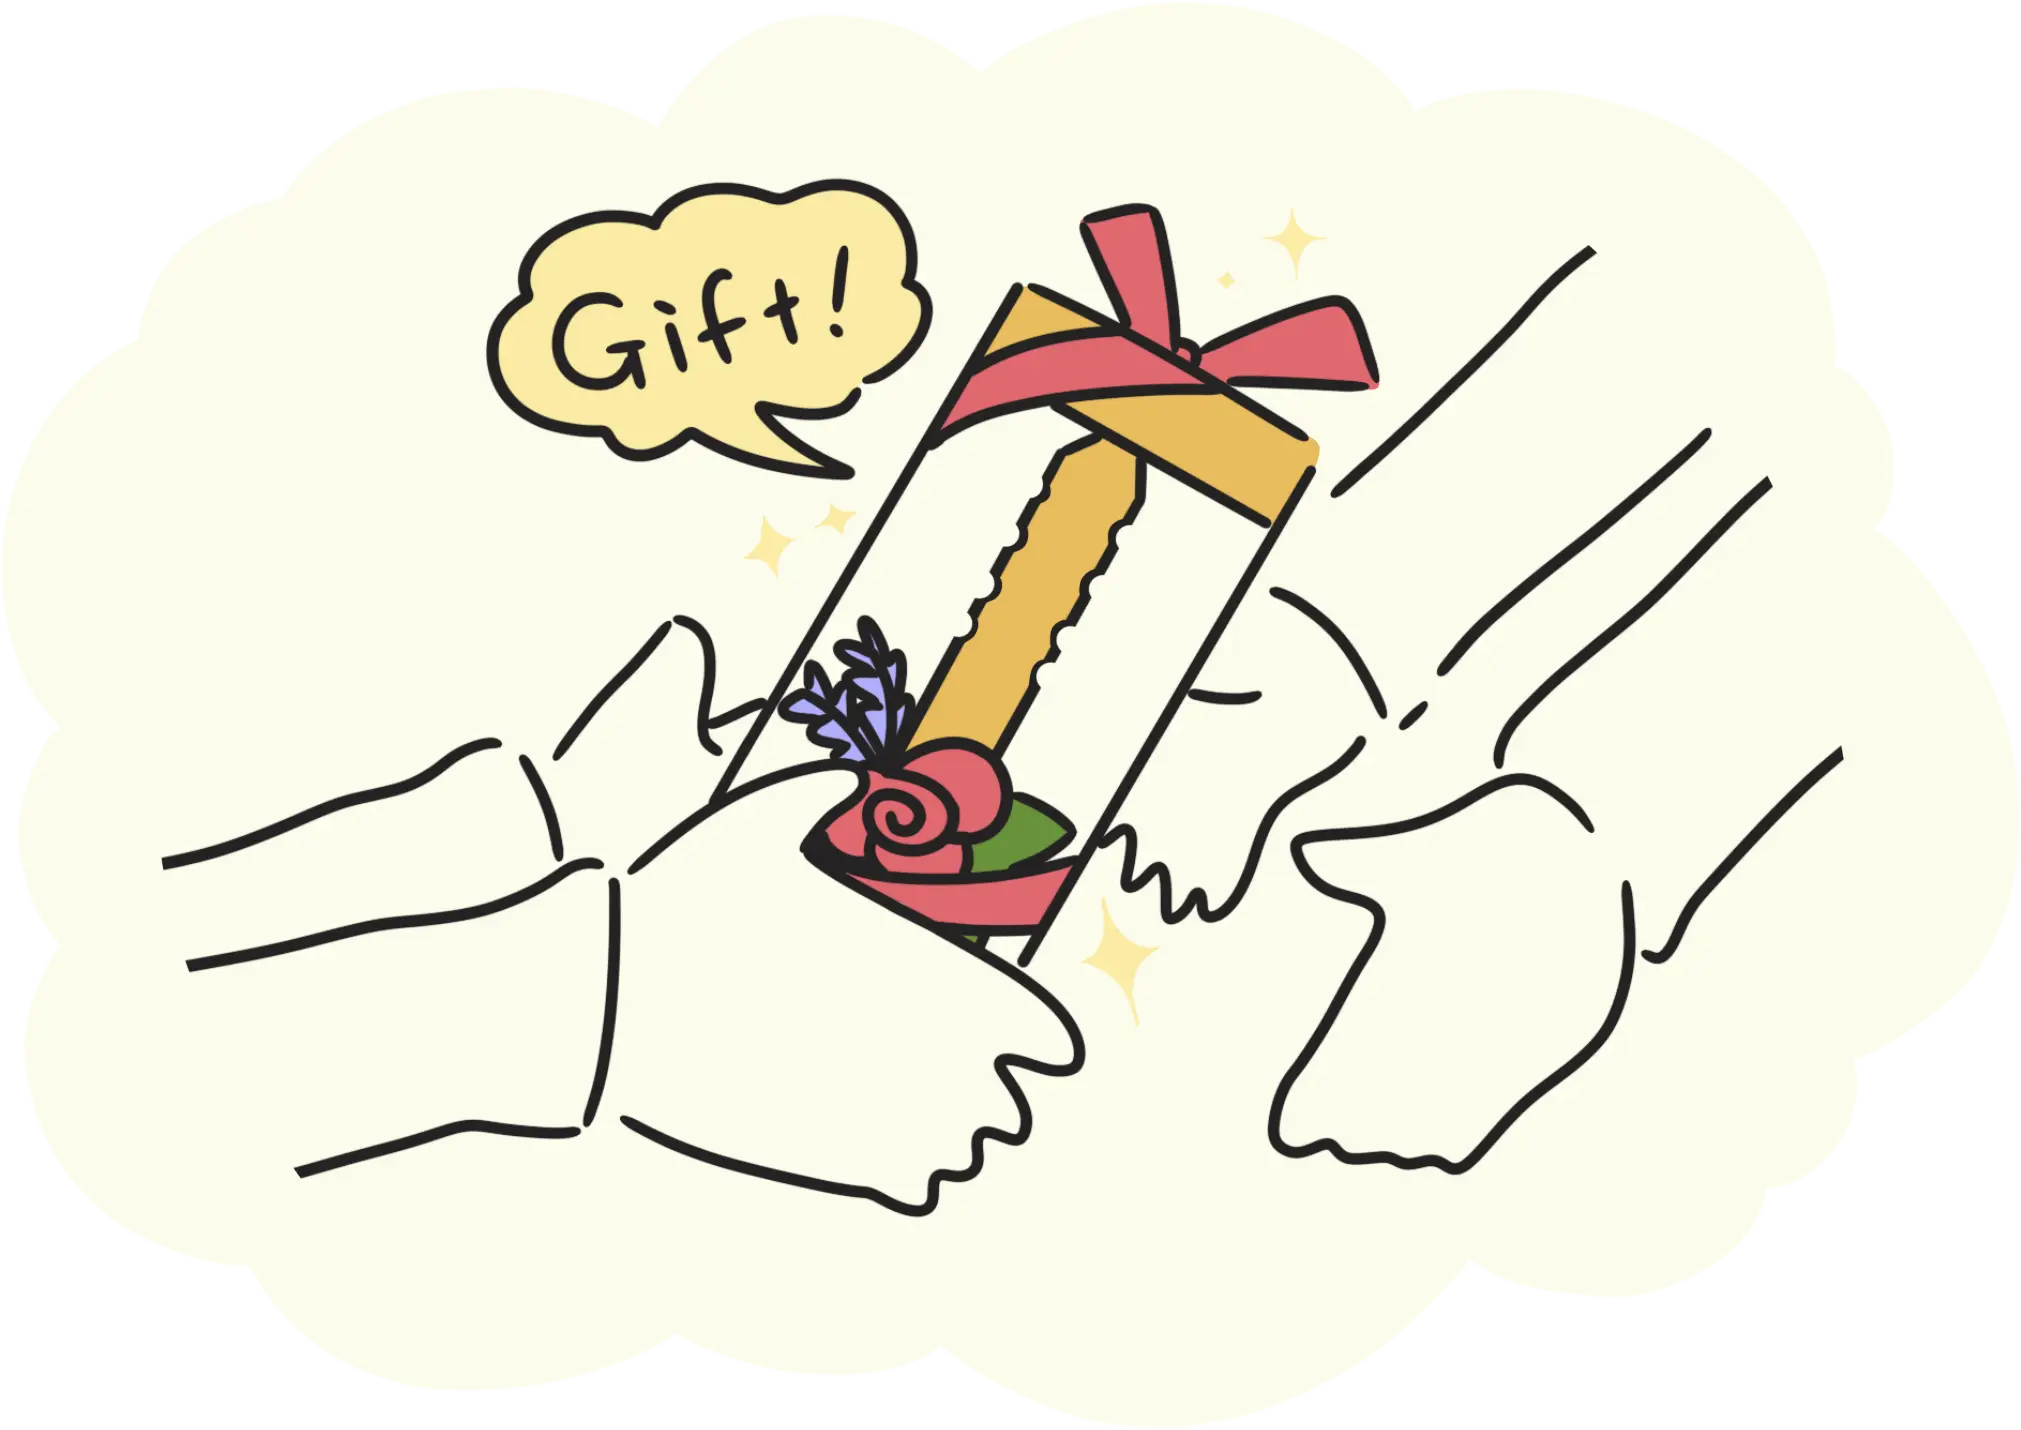 商品の使い方、ステップ3の図説です。箱に入った花手紙kotobaを、贈り物として手渡しています。